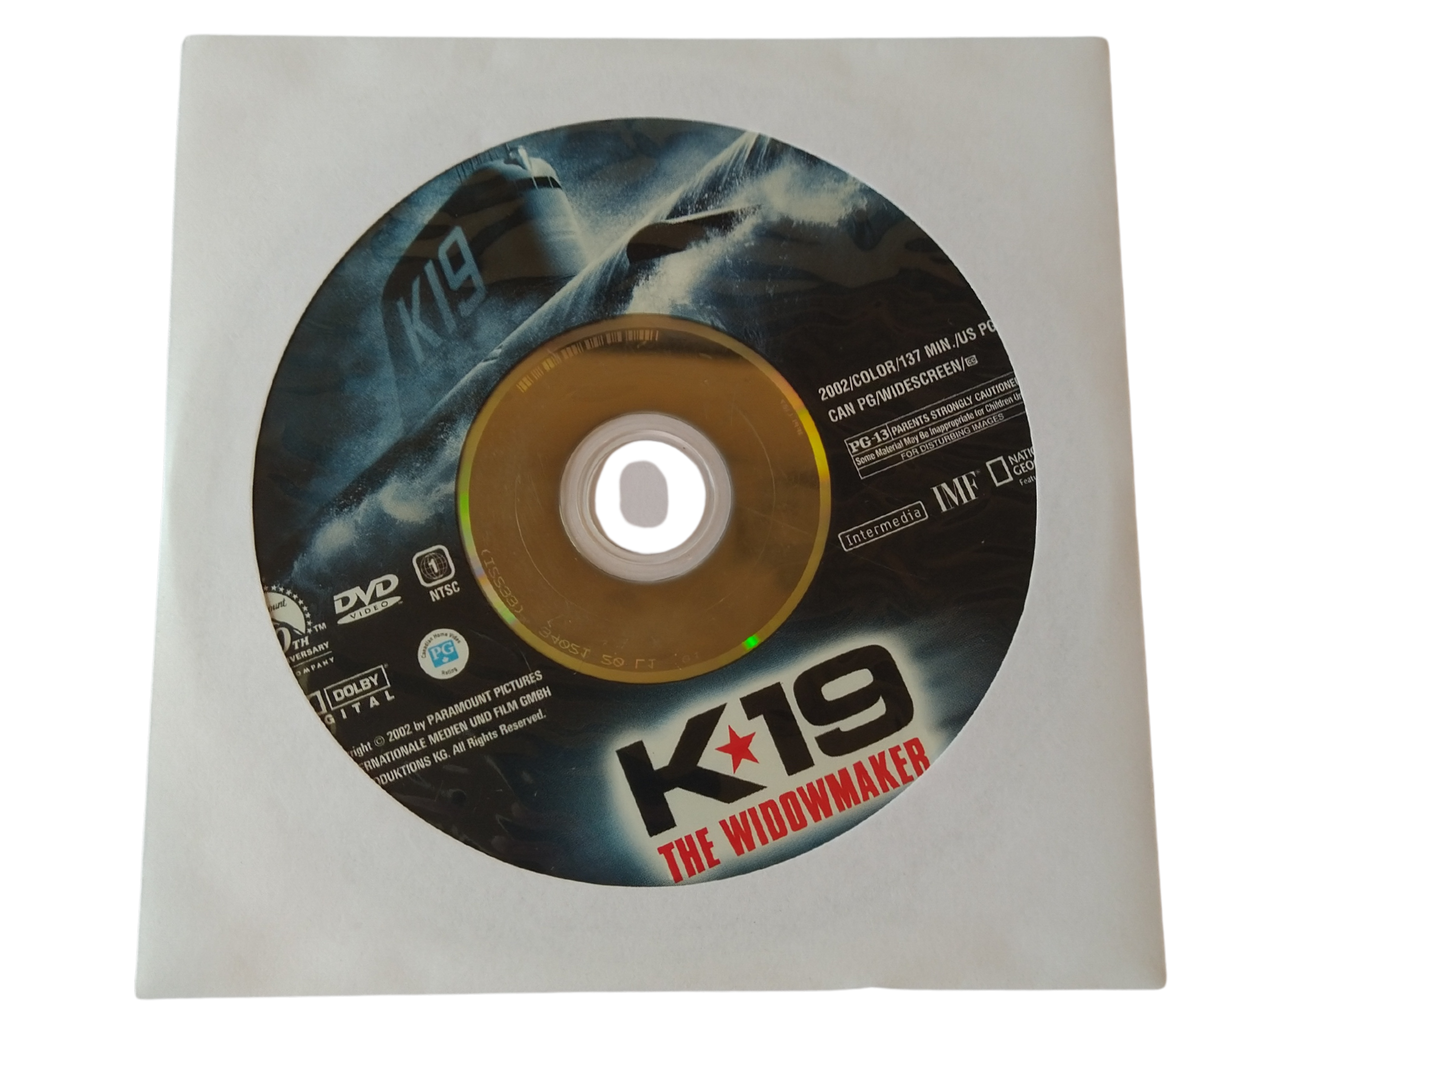 K19: The Widowmaker DVD - Disc Only